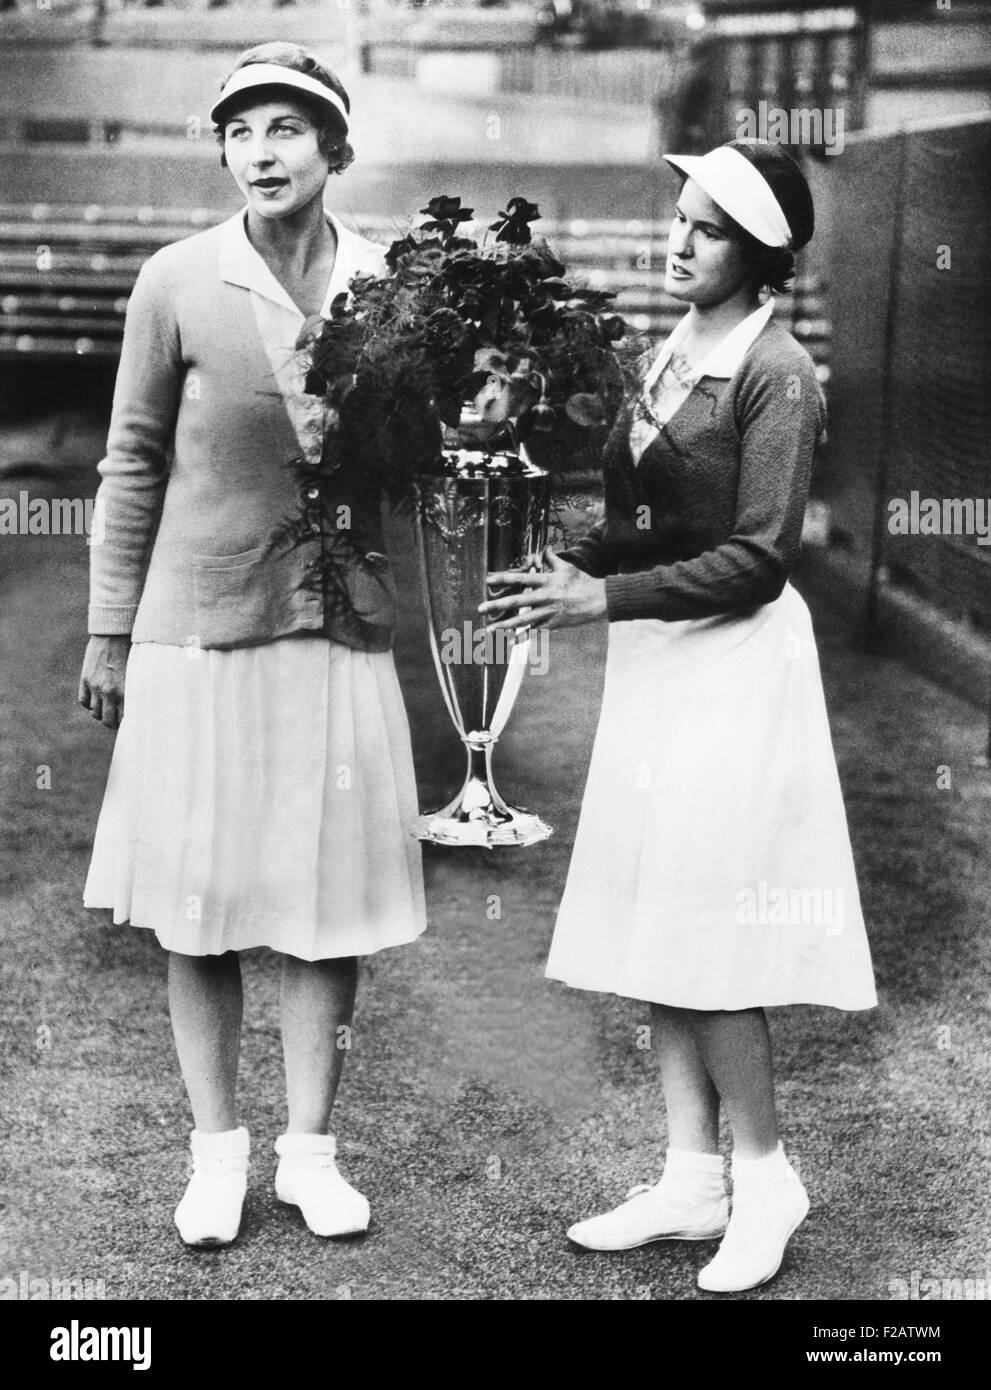 Helen Wills Moody (sinistra) e Sarah Palfrey, con la Wightman Cup. Giugno 20, 1932. La vincente raddoppia i partner sono stati presentati il trofeo dalla Principessa Victoria. America trattenuto Wightman Cup nel 1932 battendo la squadra britannica con un punteggio di 4 corrisponde a 3. Il tennis è stato riprodotto su i giudici a Wimbledon, Inghilterra. (CSU 2015 11 1580) Foto Stock